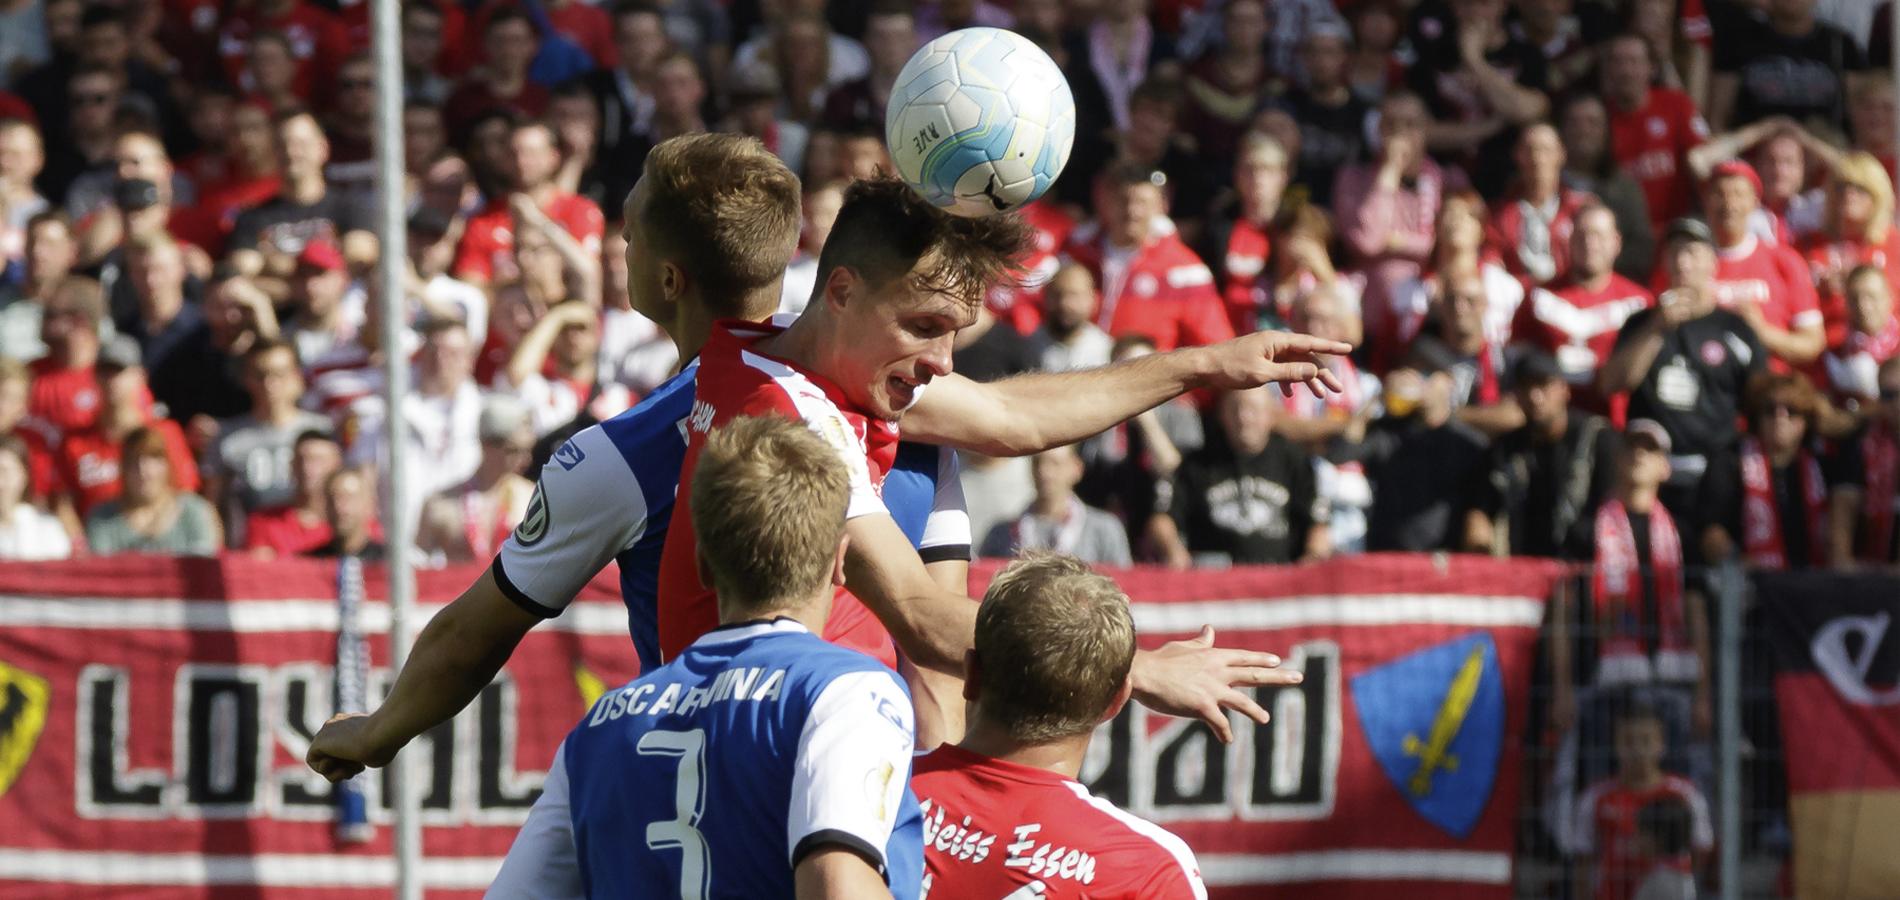 Wiedersehen nach vier Jahren: Im Spiel gegen Arminia Bielefeld könnte Brian Behrendt (Nr. 3 Arminia) auch wieder auf RWE-Stürmer Marcel Platzek (im Kopfball) treffen. (Foto: Endberg)